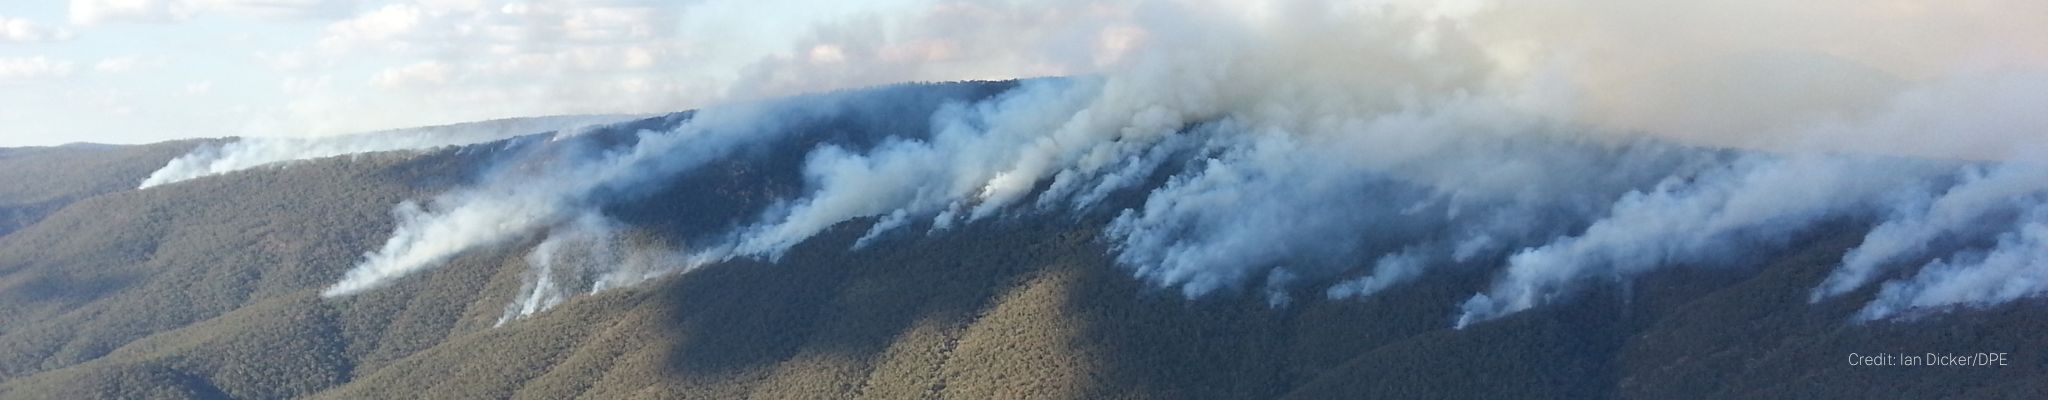 Smoke from a bushfire drifts across ranges